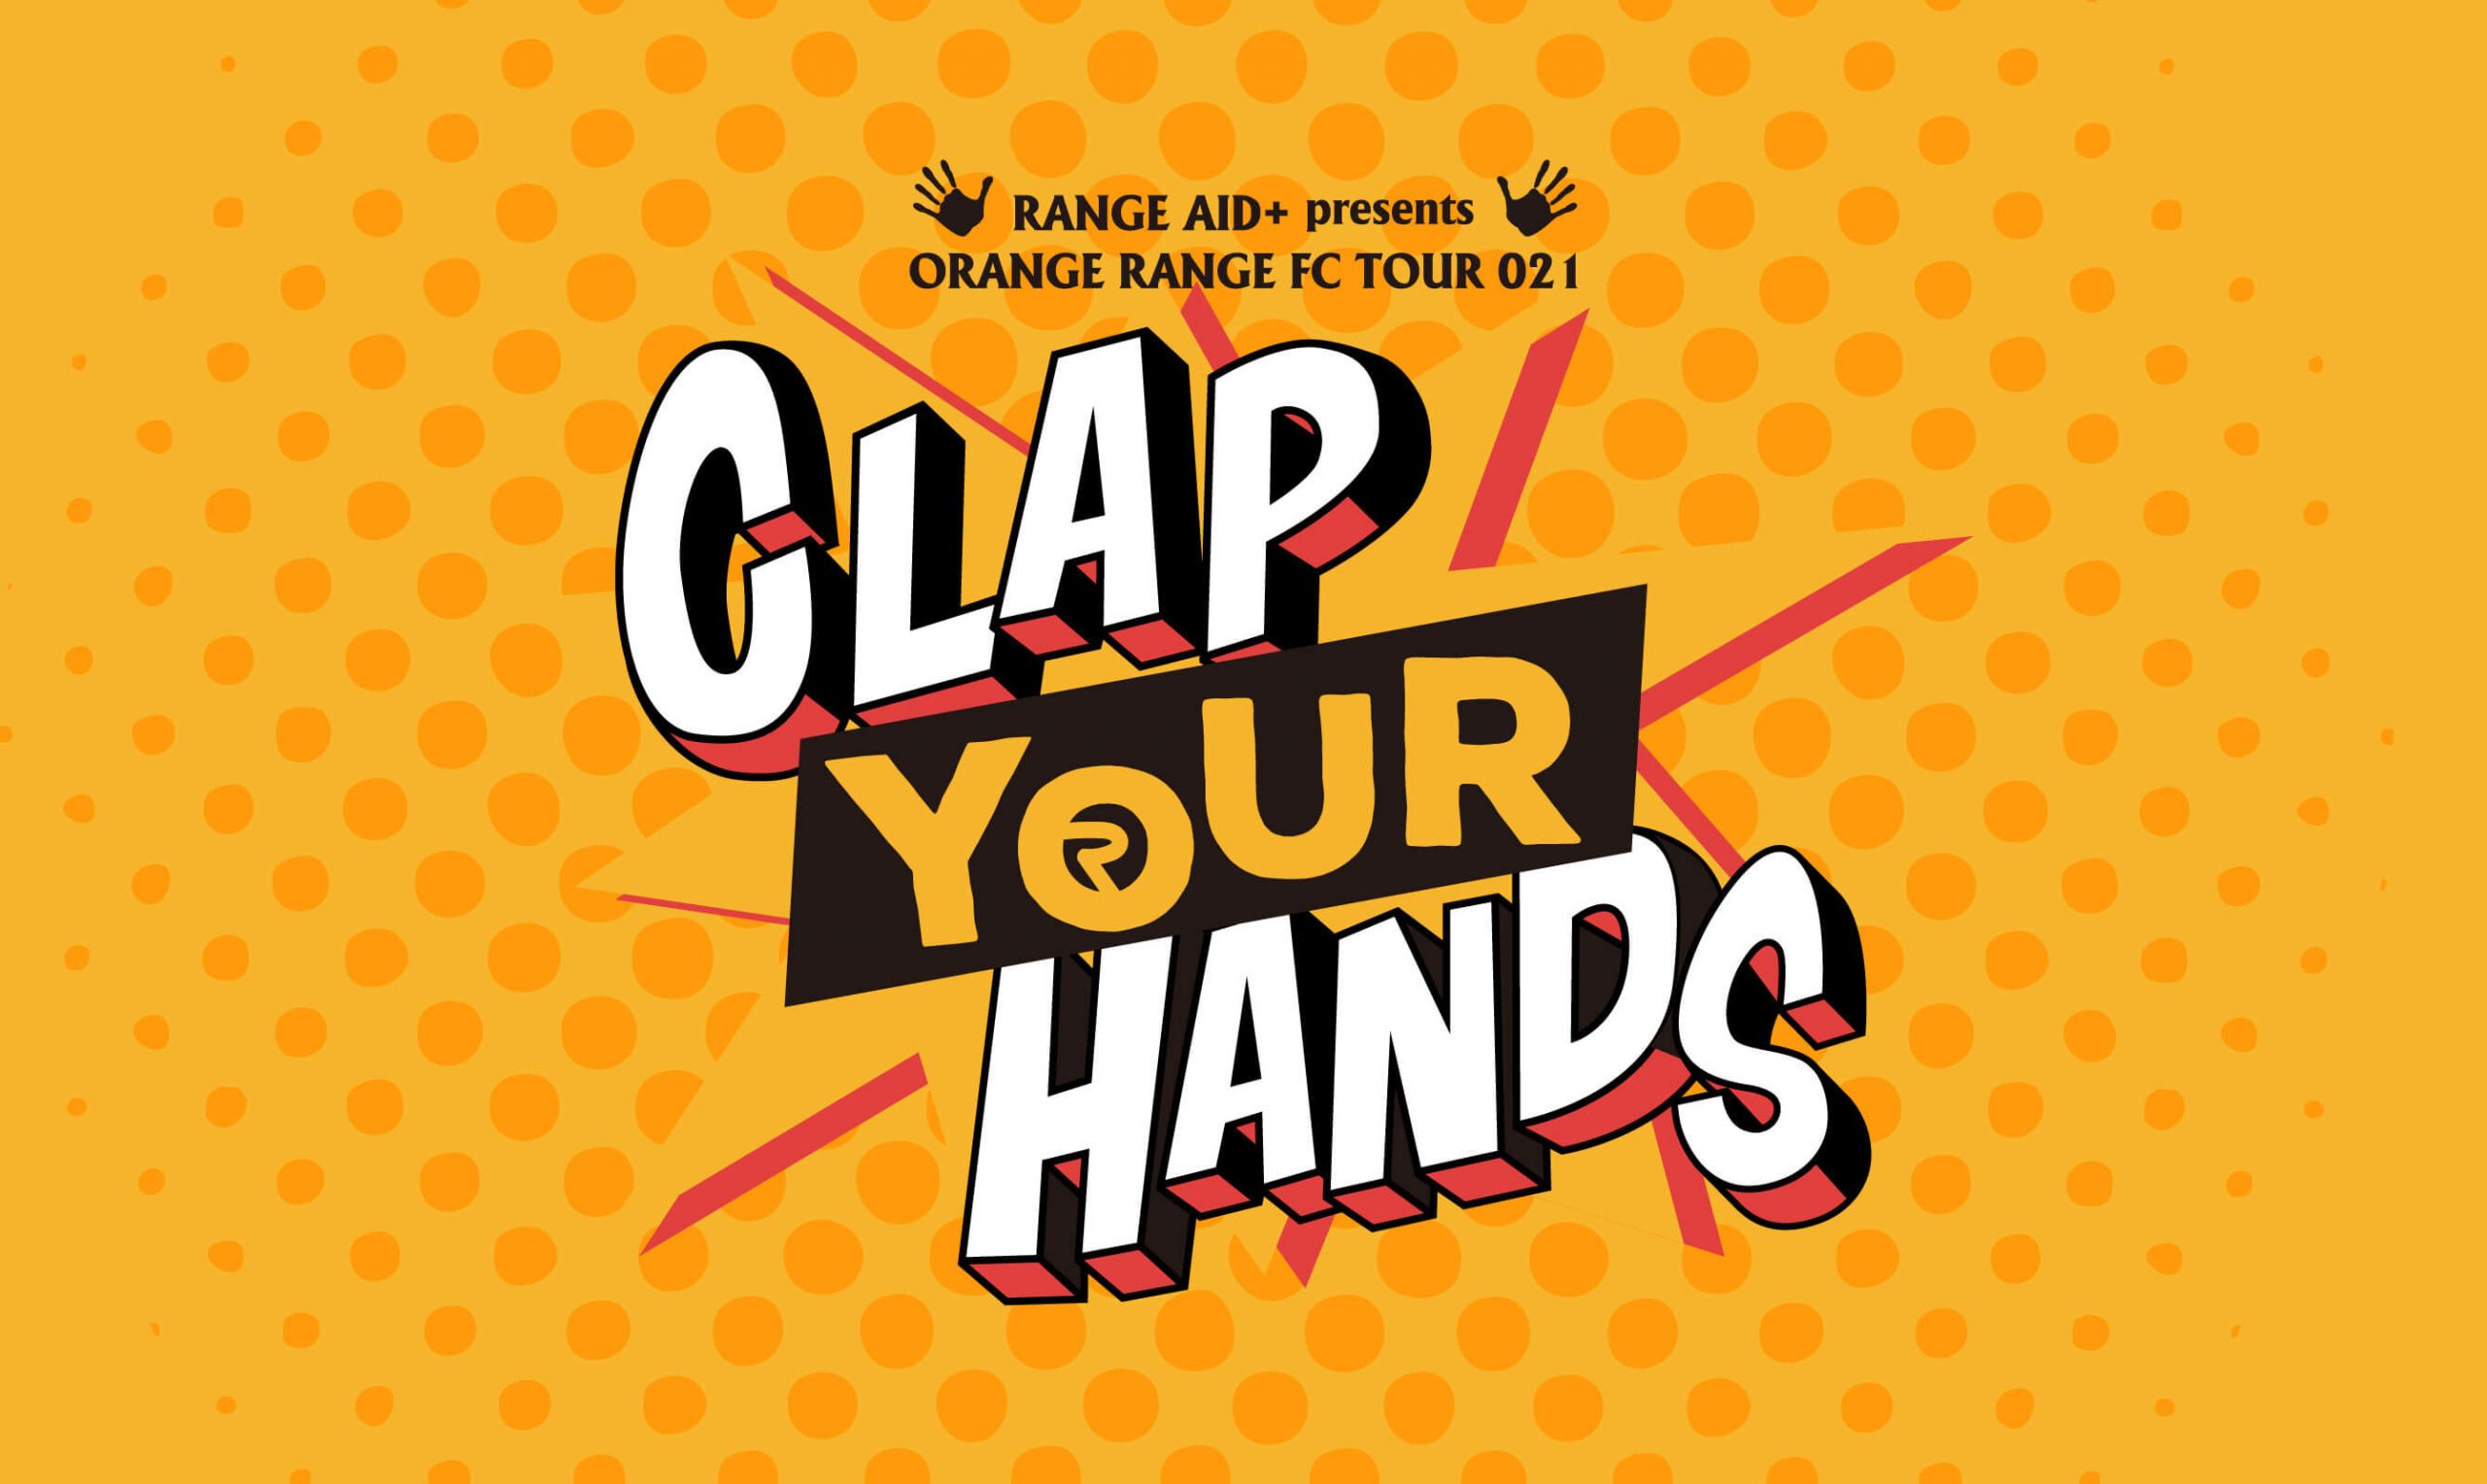 ネタバレ注意】ORANGE RANGE FC tour 021 “CLAP YOUR HANDS” 参戦レポ